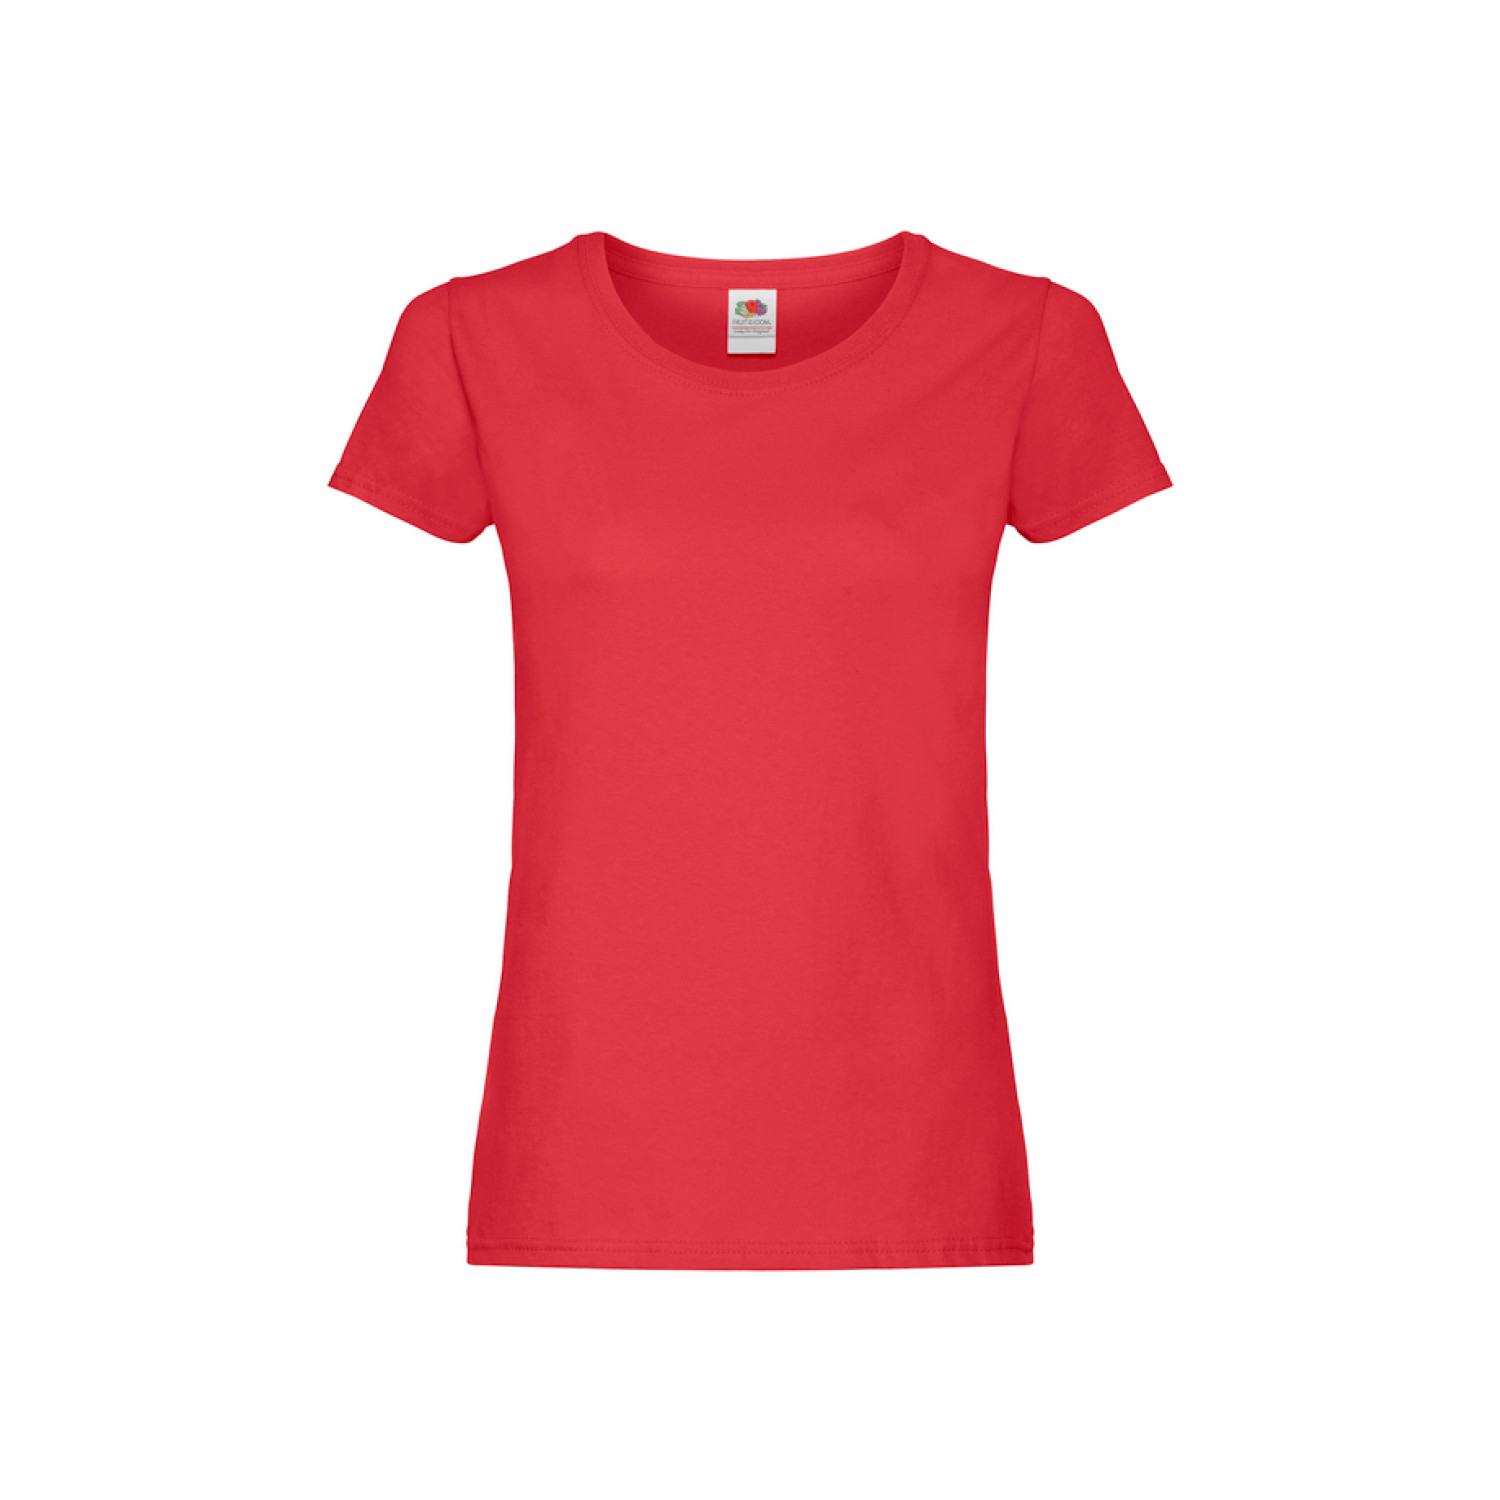 Дамска тениска, червена